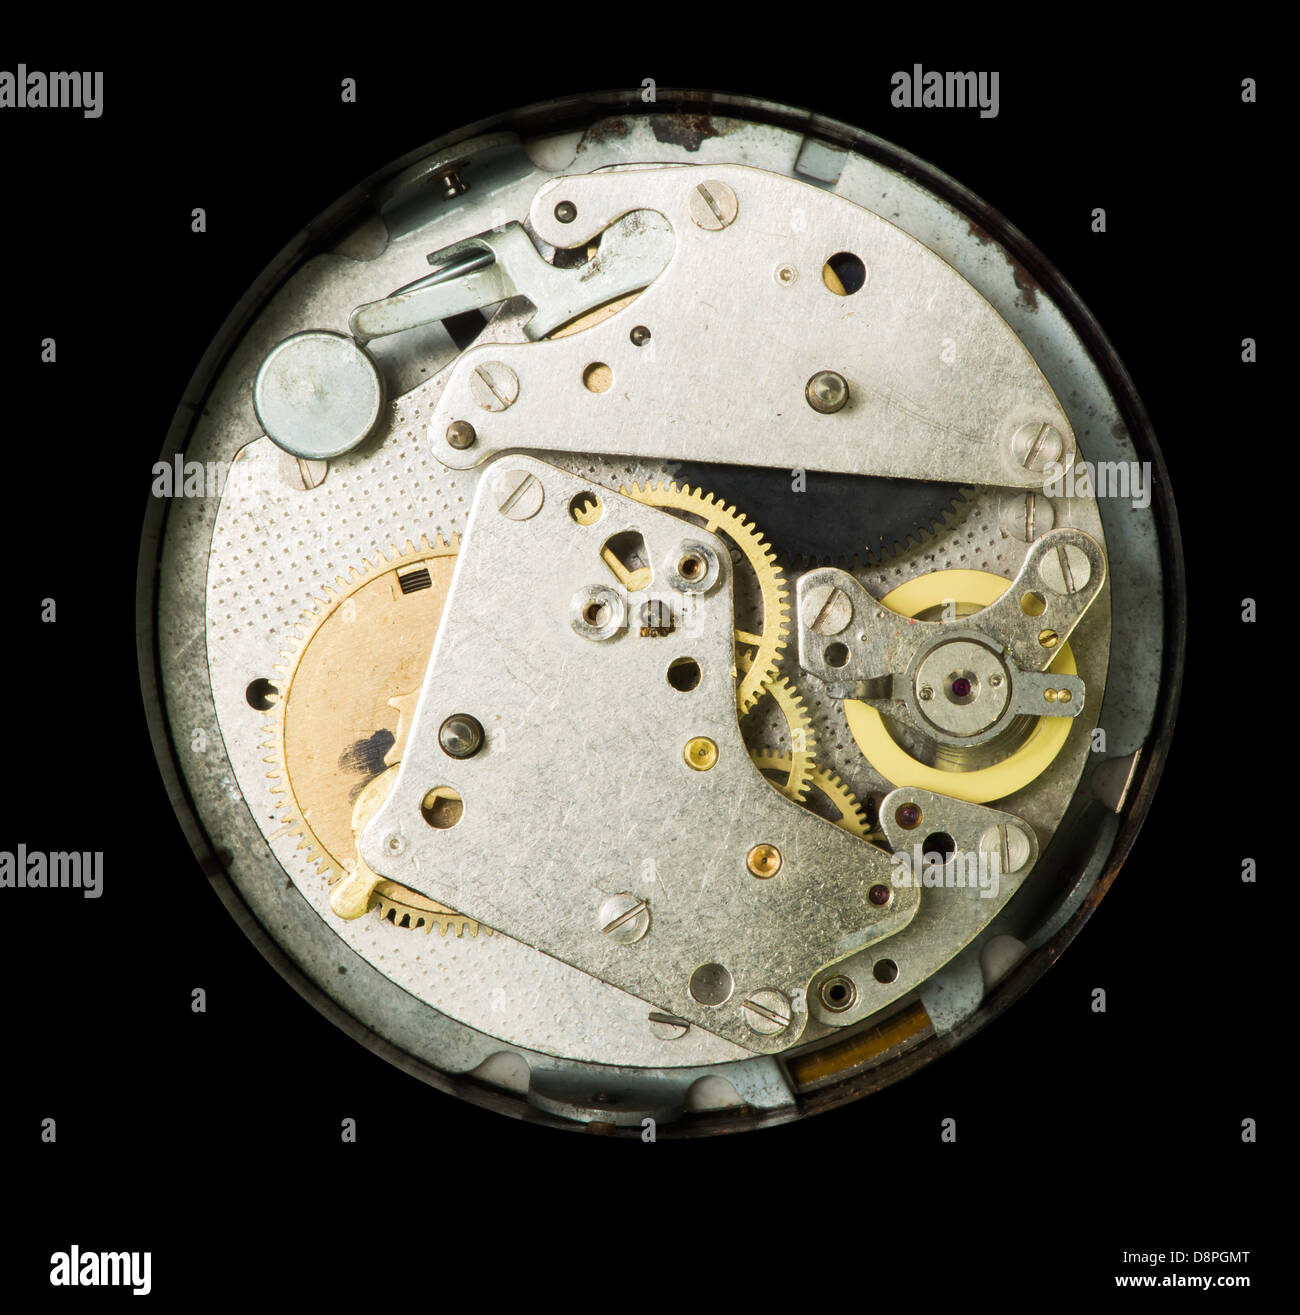 Une horloge mécanique close up Banque D'Images